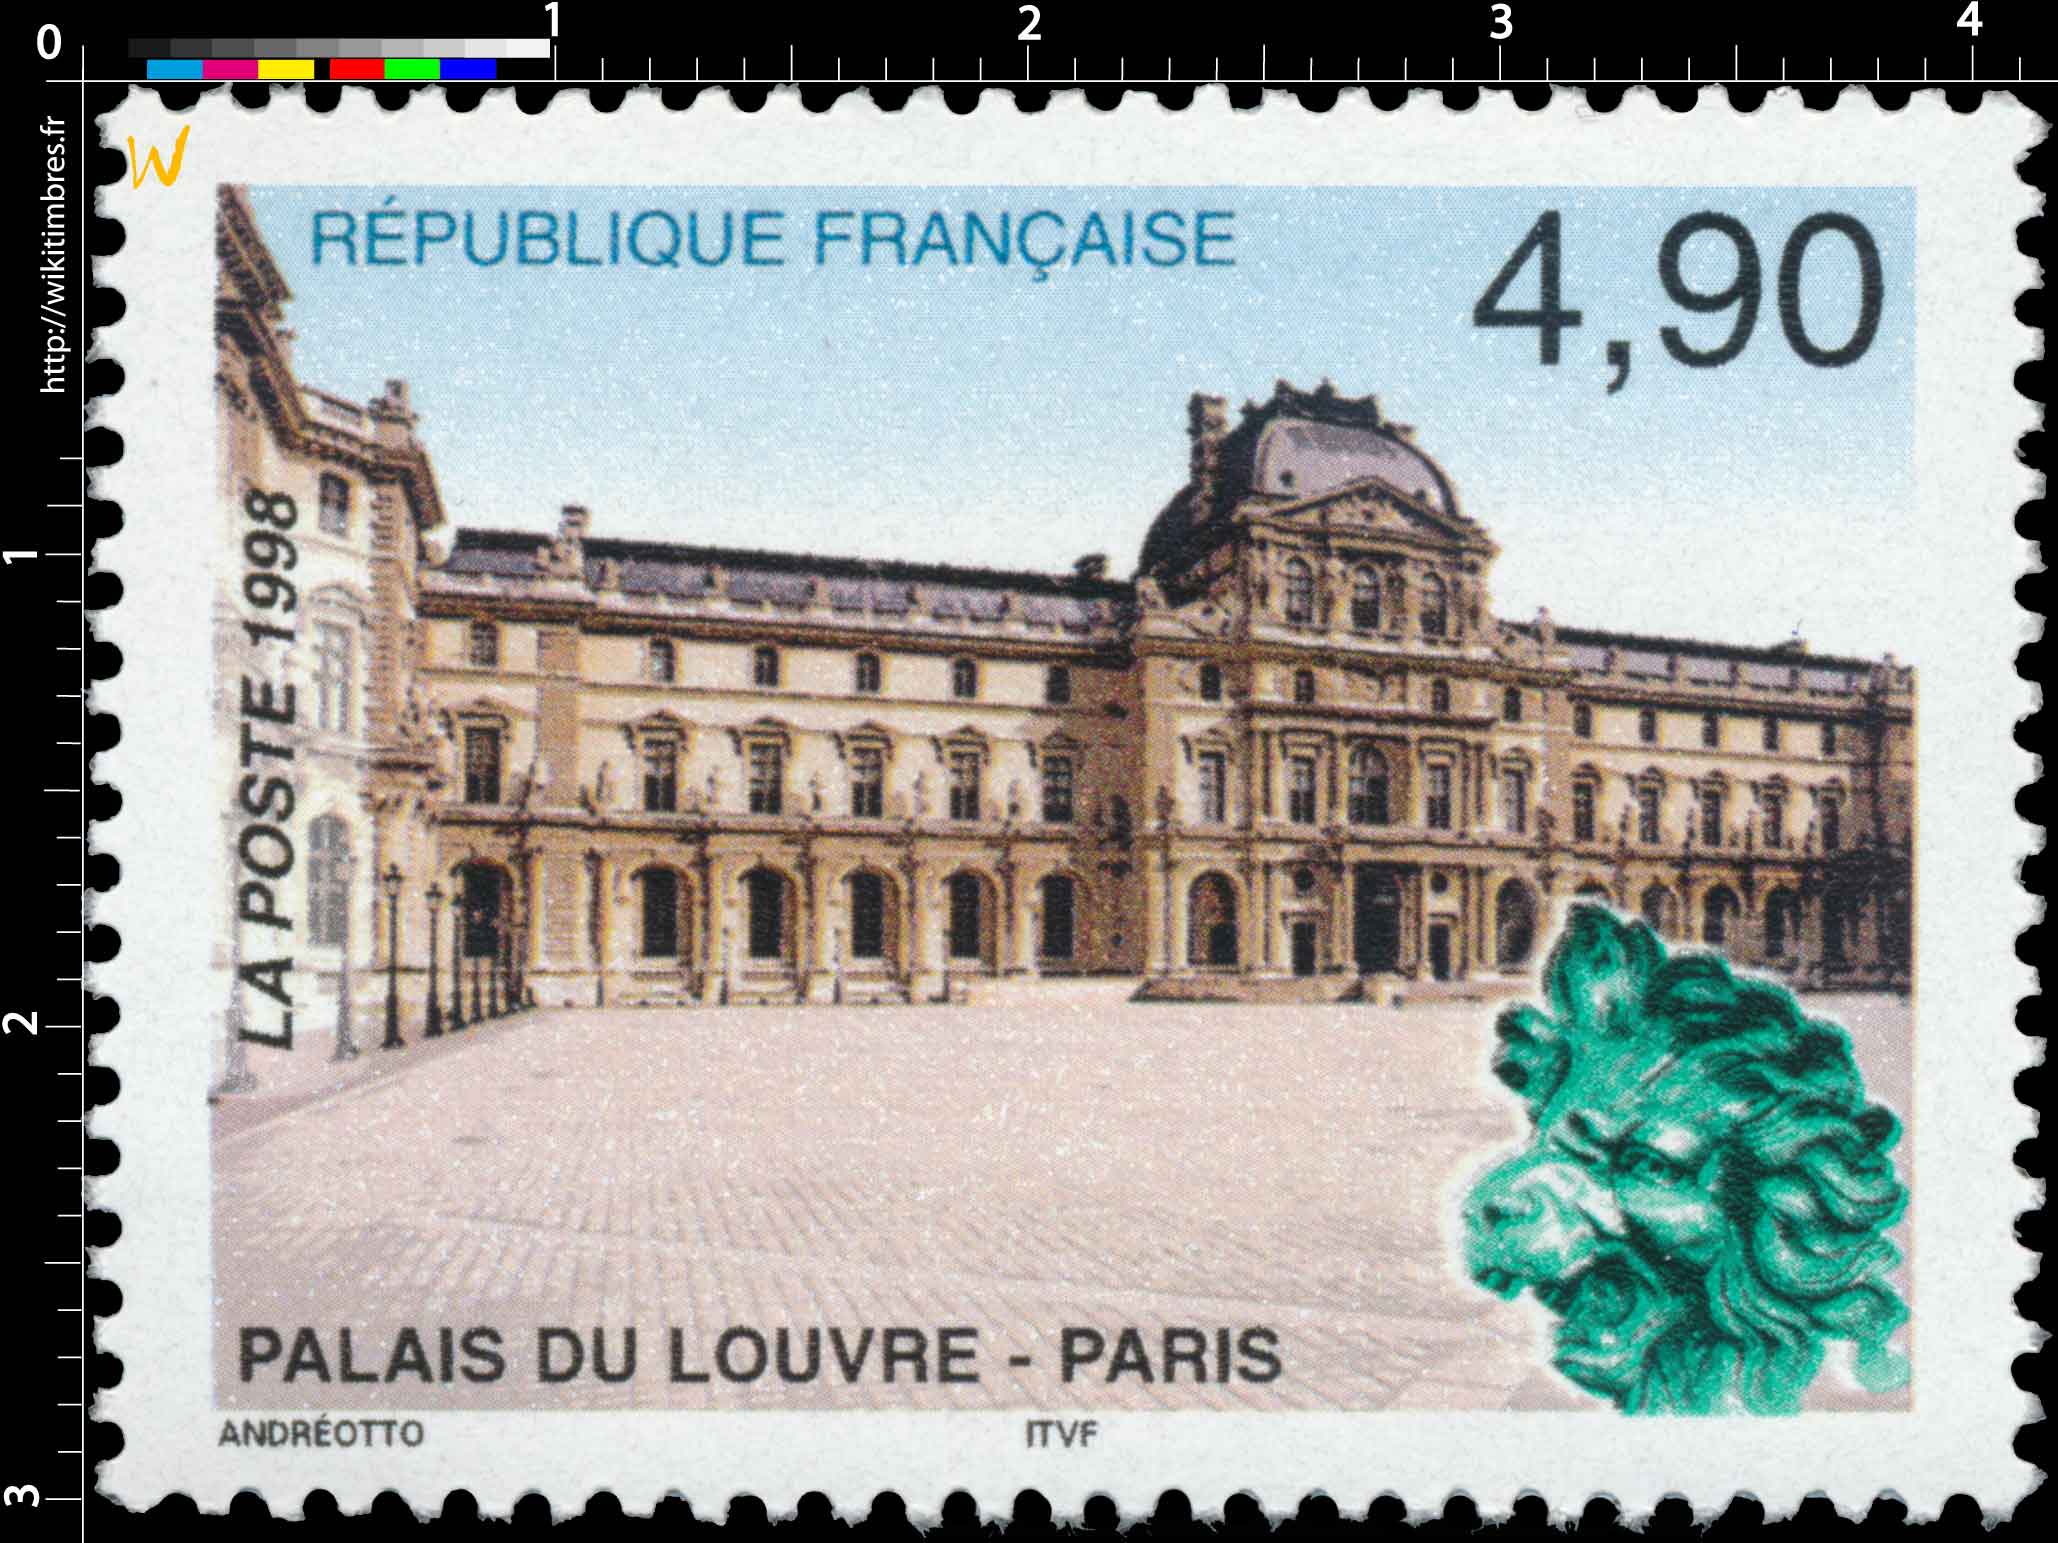 1998 PALAIS DU LOUVRE - PARIS